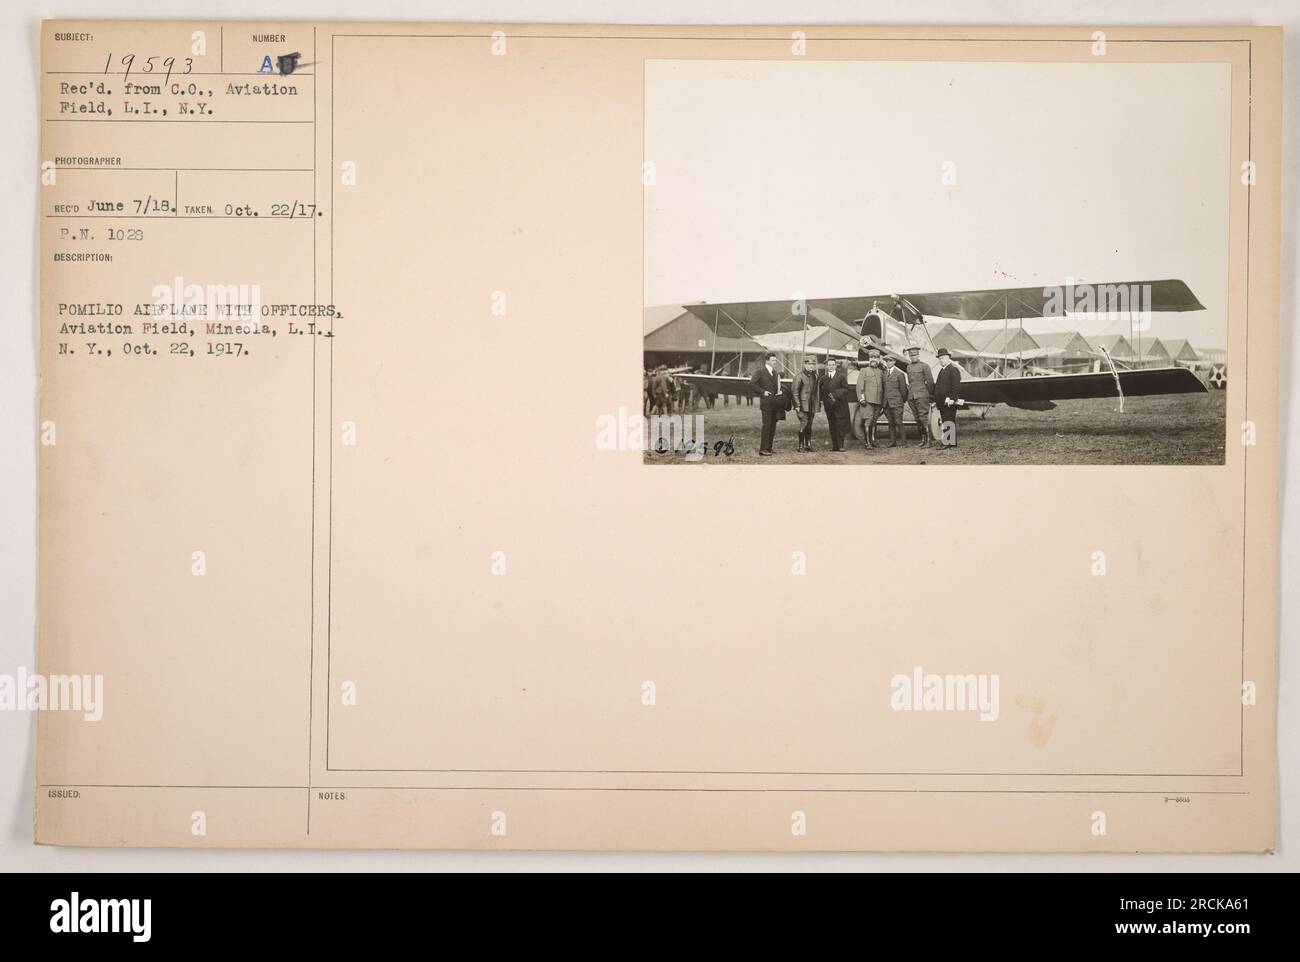 Dieses Foto zeigt ein Pomilio-Flugzeug zusammen mit Offizieren auf dem Flugplatz in Mineola, L.I. Es wurde am 22. Oktober 1917 aufgenommen und vom C.O., Aviation Field, L.I., N. Y. empfangen. Der Fotograf, der für dieses Bild verantwortlich ist, ist Sumber Recs. Dieses Foto ist als Subjekt 19593 klassifiziert. Stockfoto